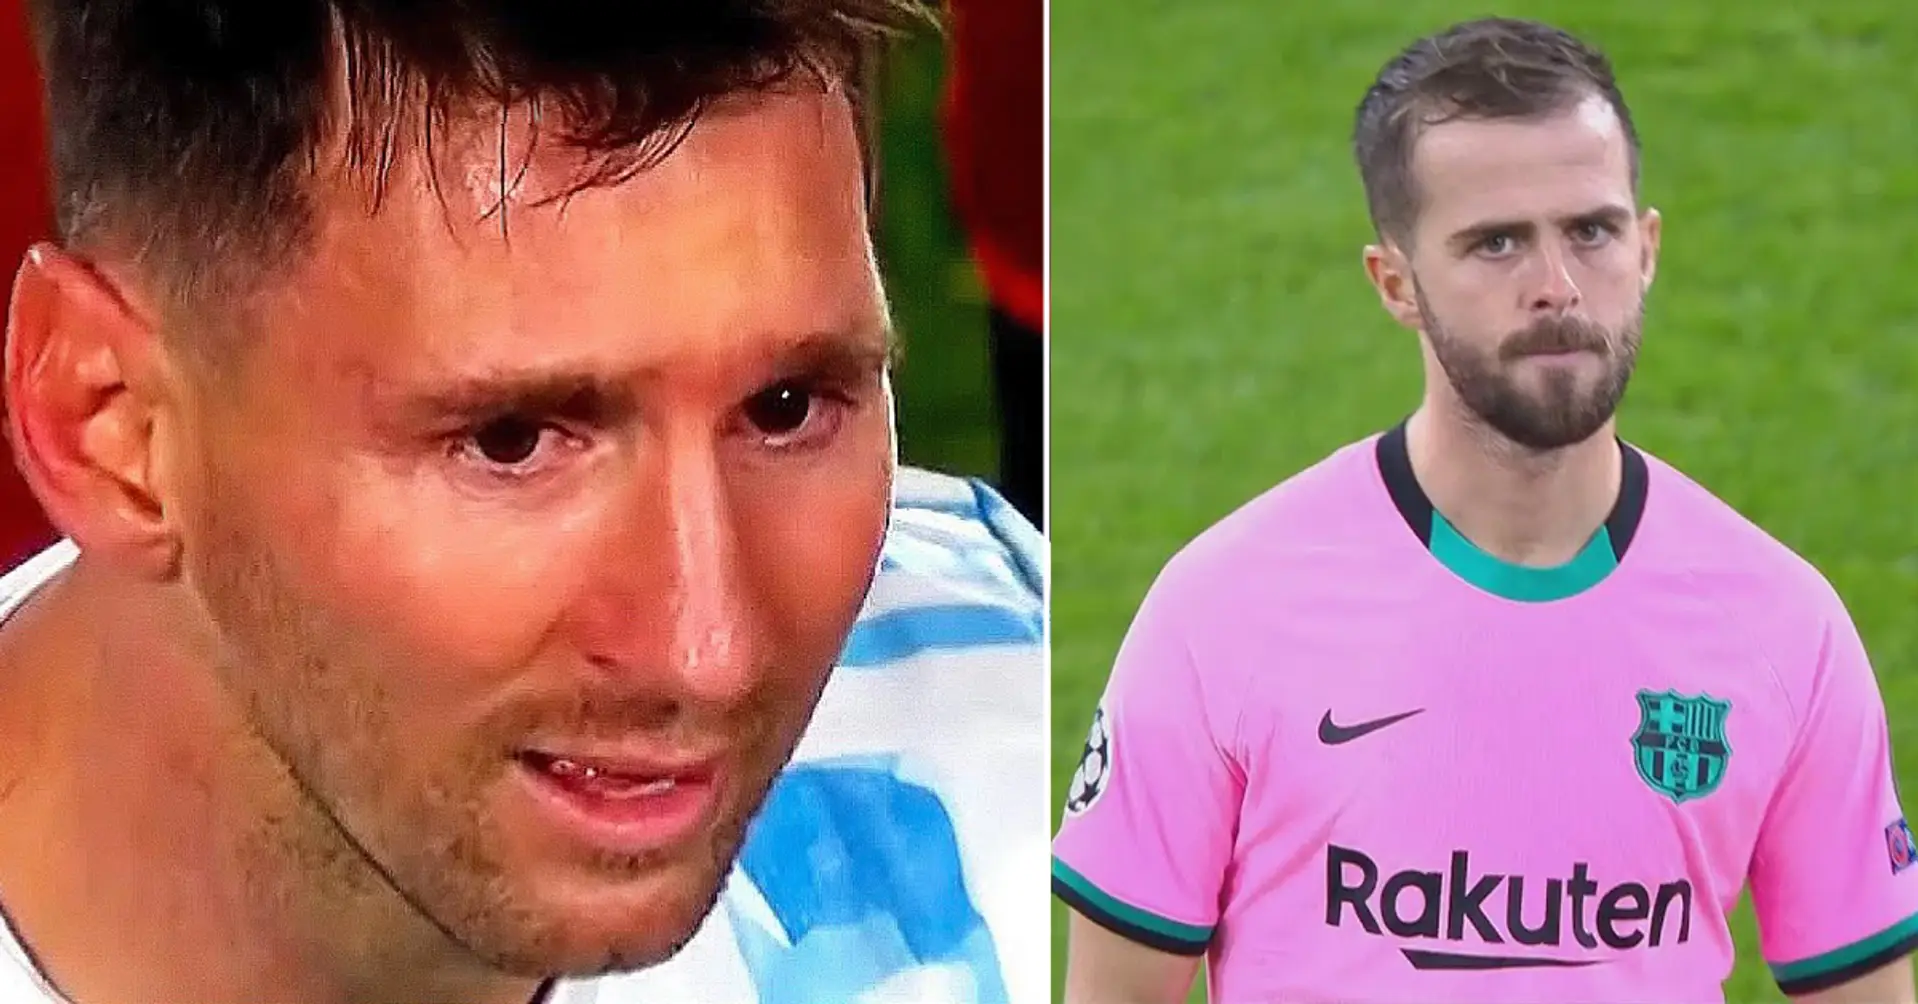 Pjanic verrät seine ehrlichen Gespräche mit Leo Messi: "Leo hat es mehrmals gesagt"